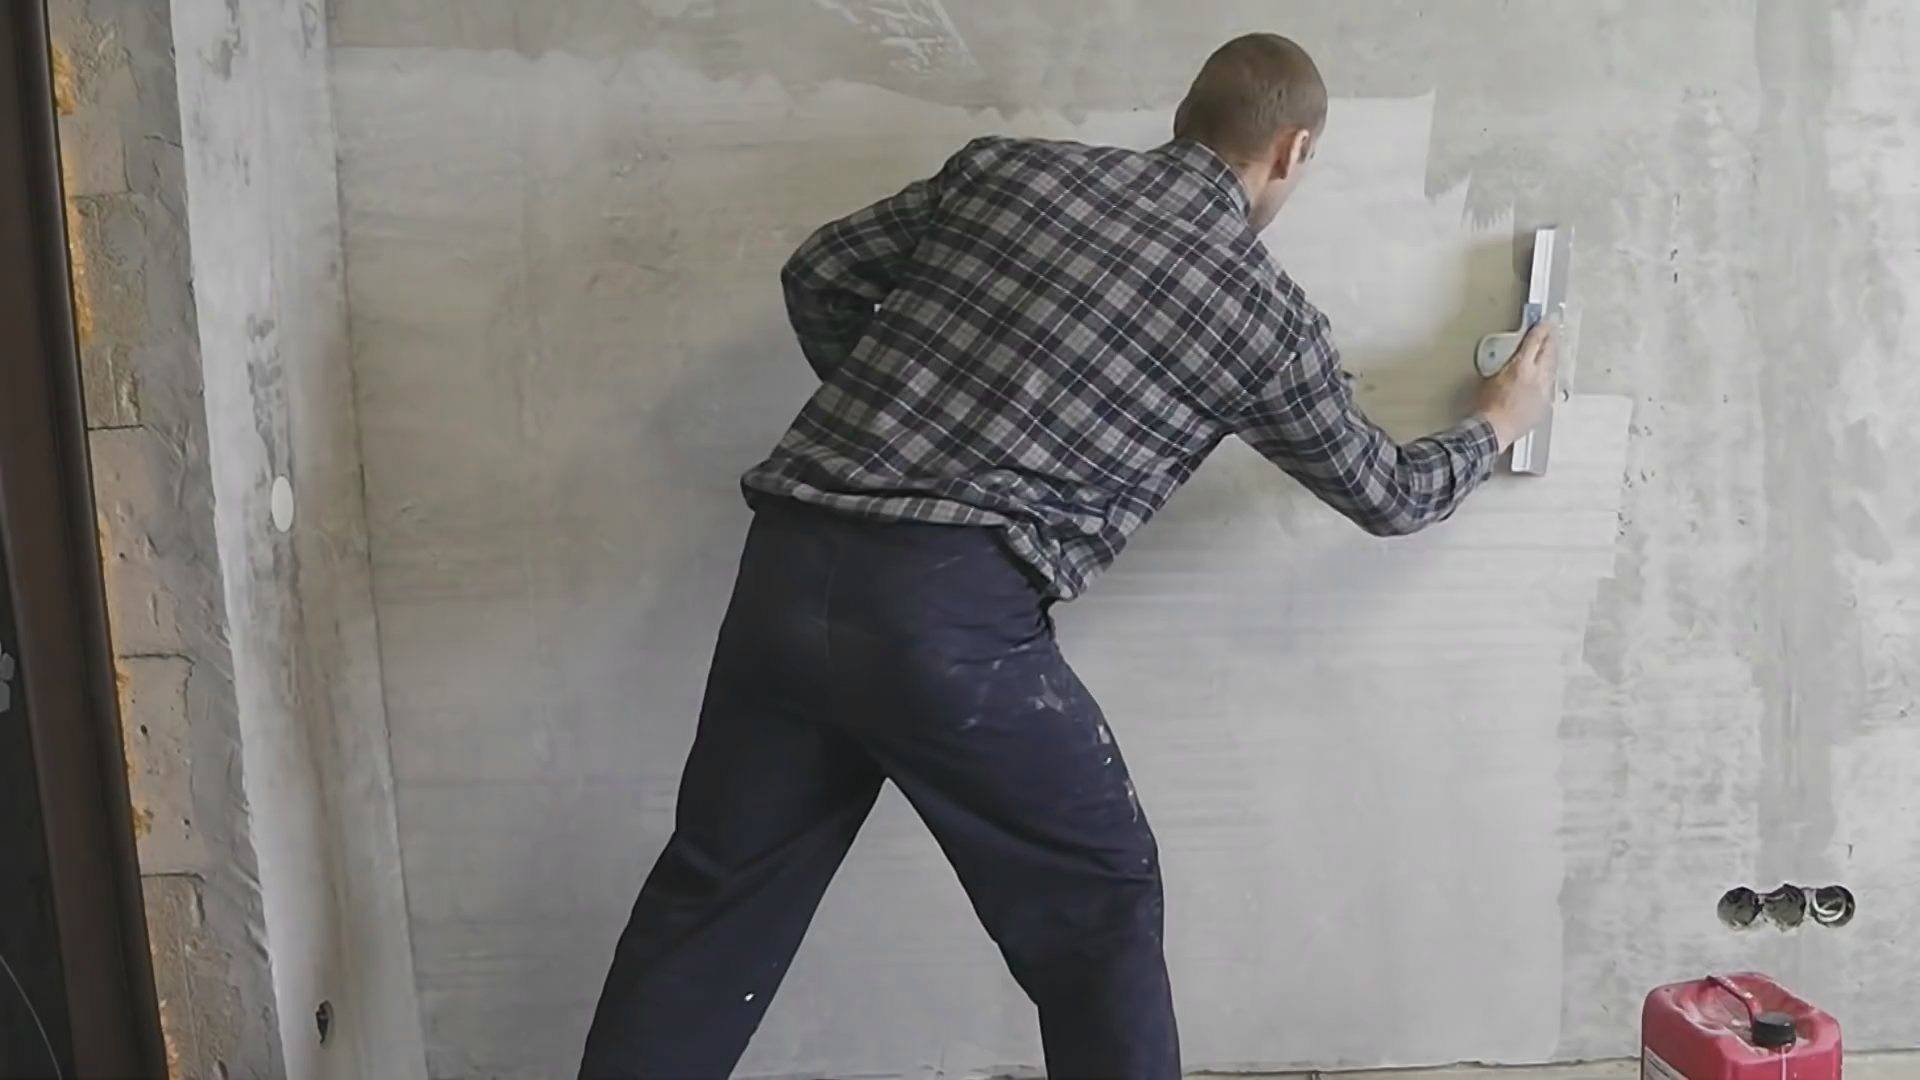 Шпаклевка стен своими руками под обои видео: финишная, как правильно шпаклевать, какая лучше для стен, какую выбрать, обои на штукатурку, видео | онлайн-журнал о ремонте и дизайне